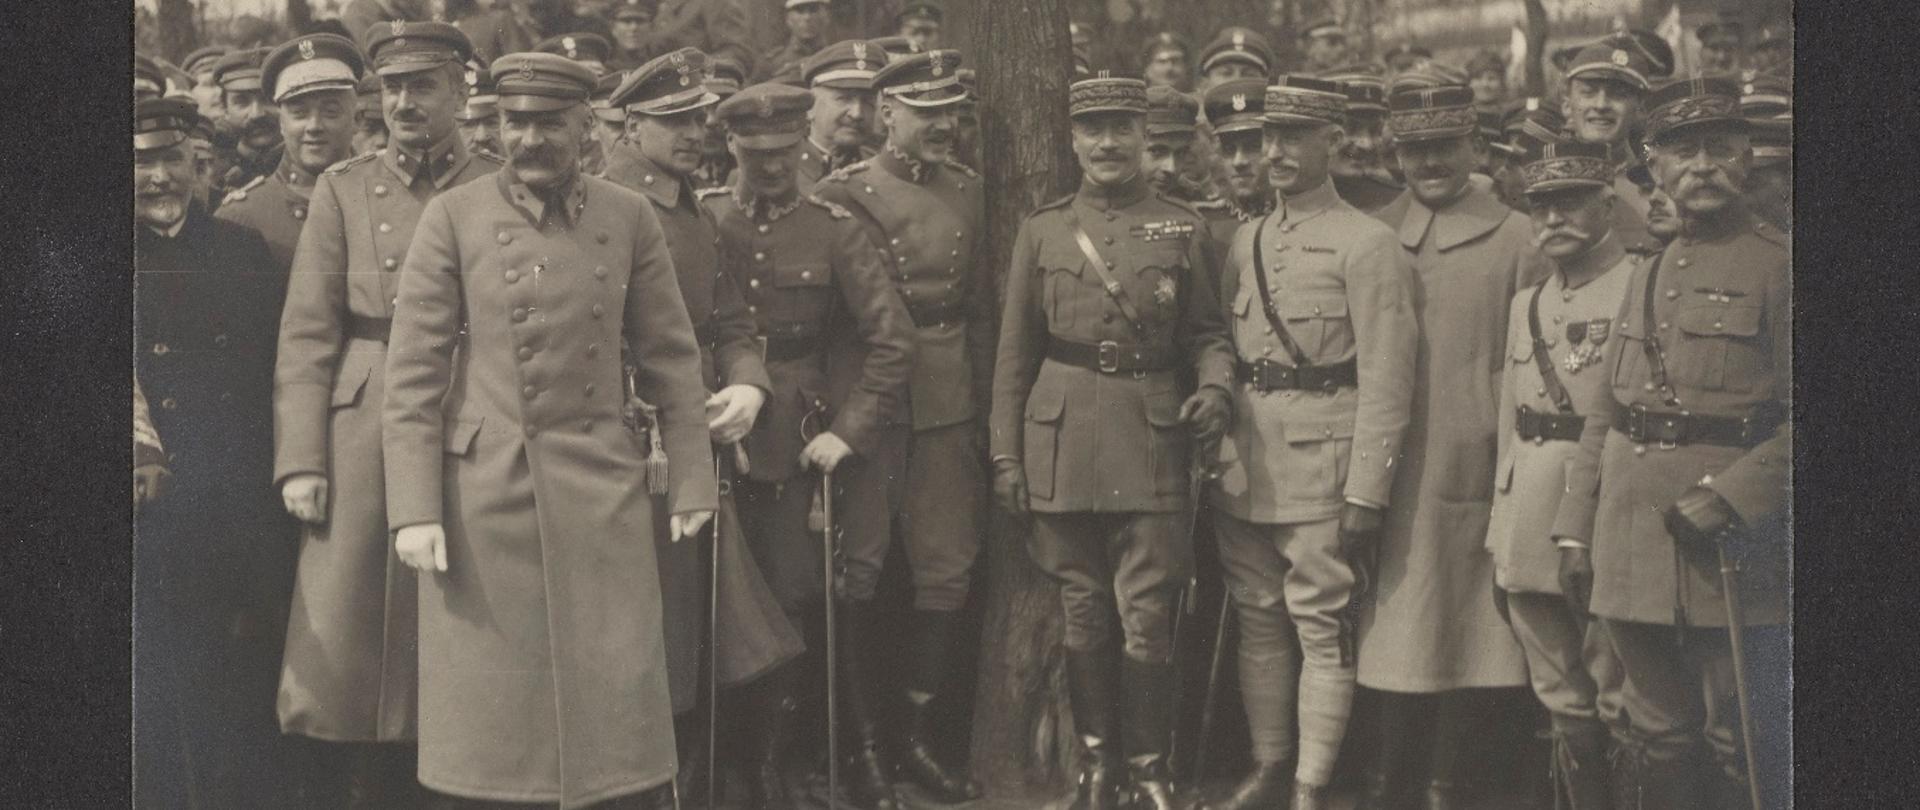 Naczelnik Państwa i Wódz Naczelny, Józef Piłsudski wśród żołnierzy polskich i alianckich, fotografia z 1920 roku
Źródło: Polona.pl